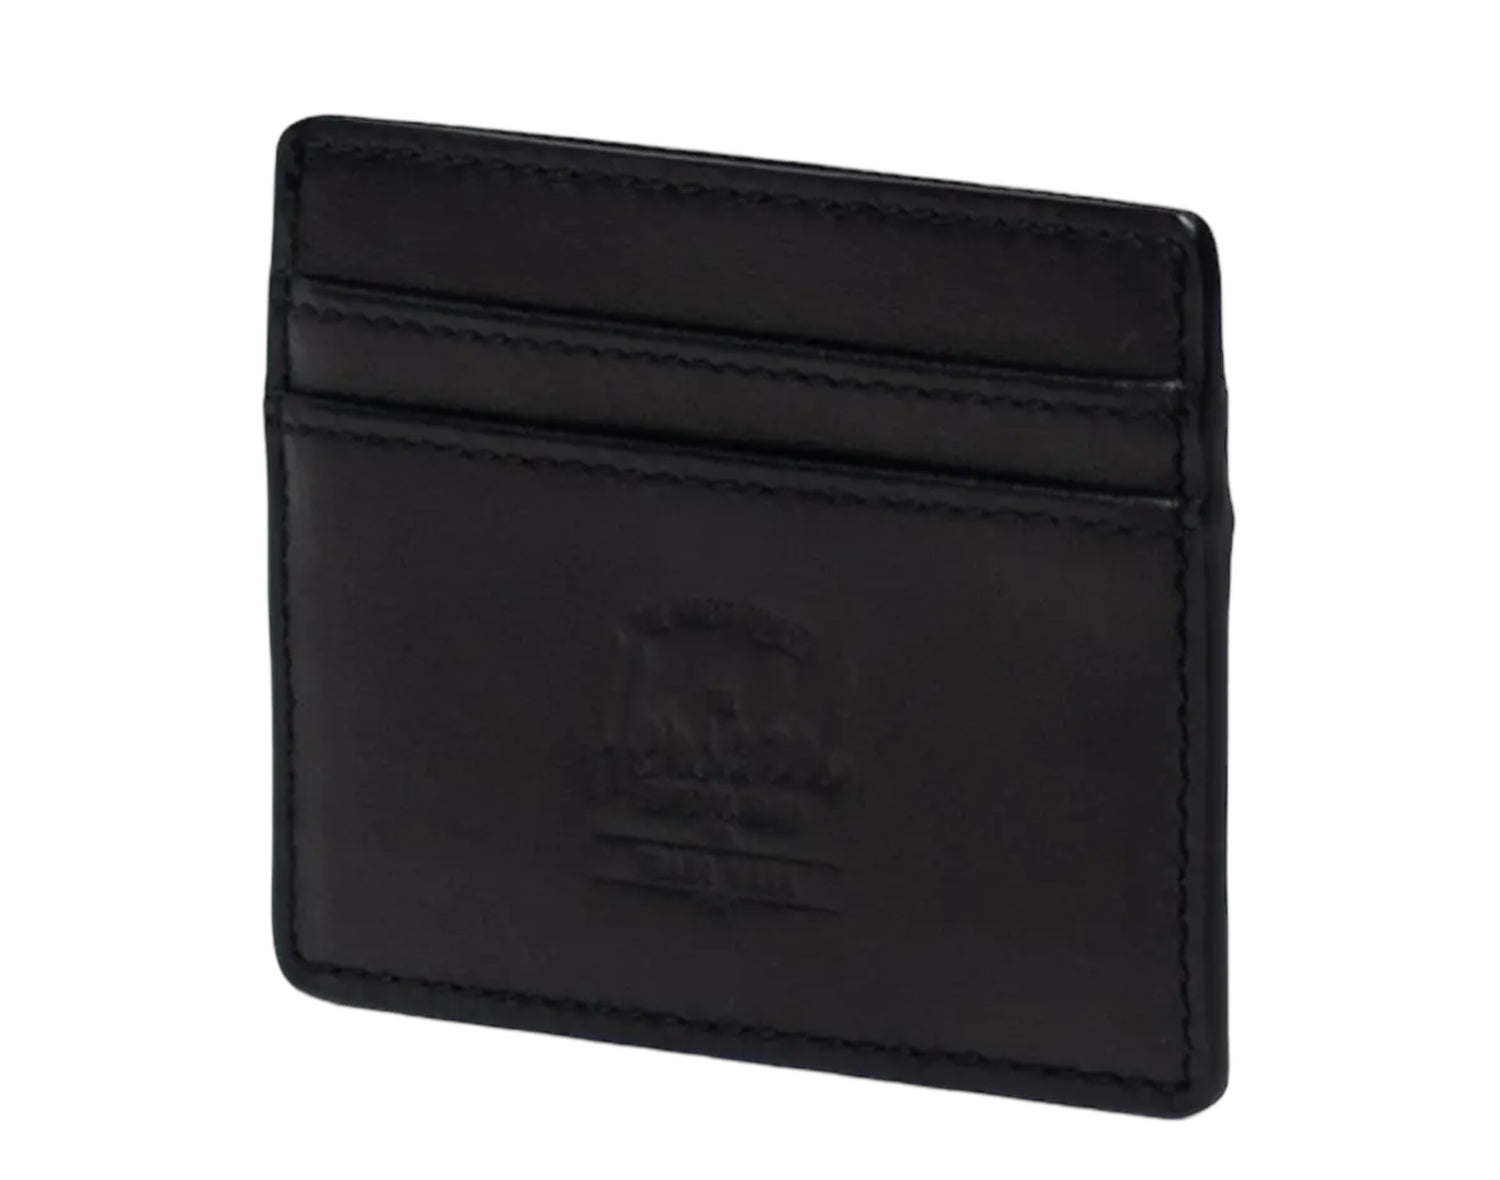 Herschel Supply Co. Charlie Cardholder Wallet Leather